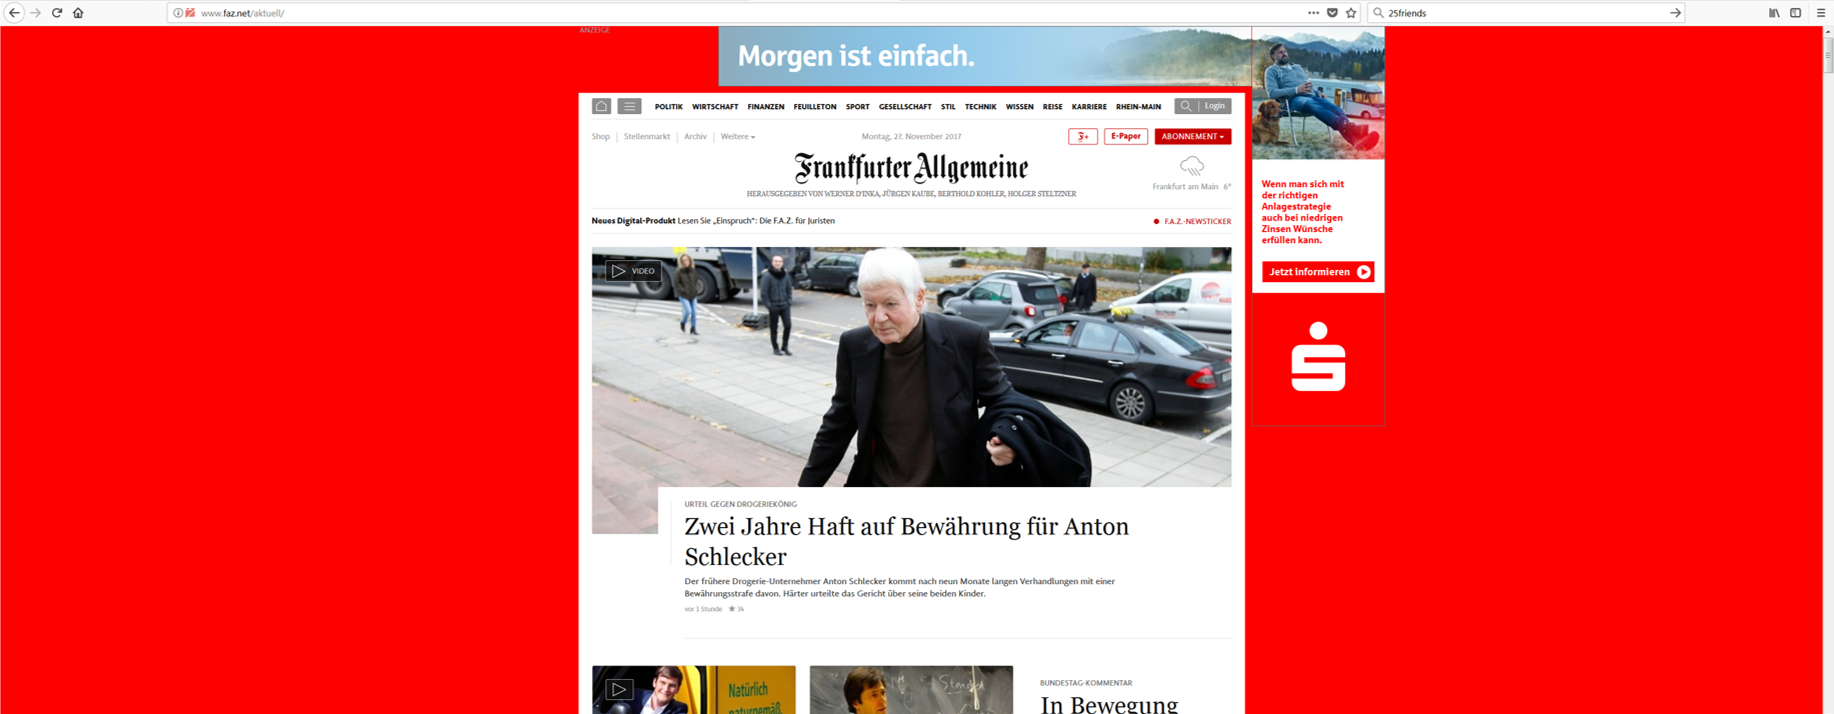 Abbildung 5: Frankfurter Allgemeine mit Werbeanzeige